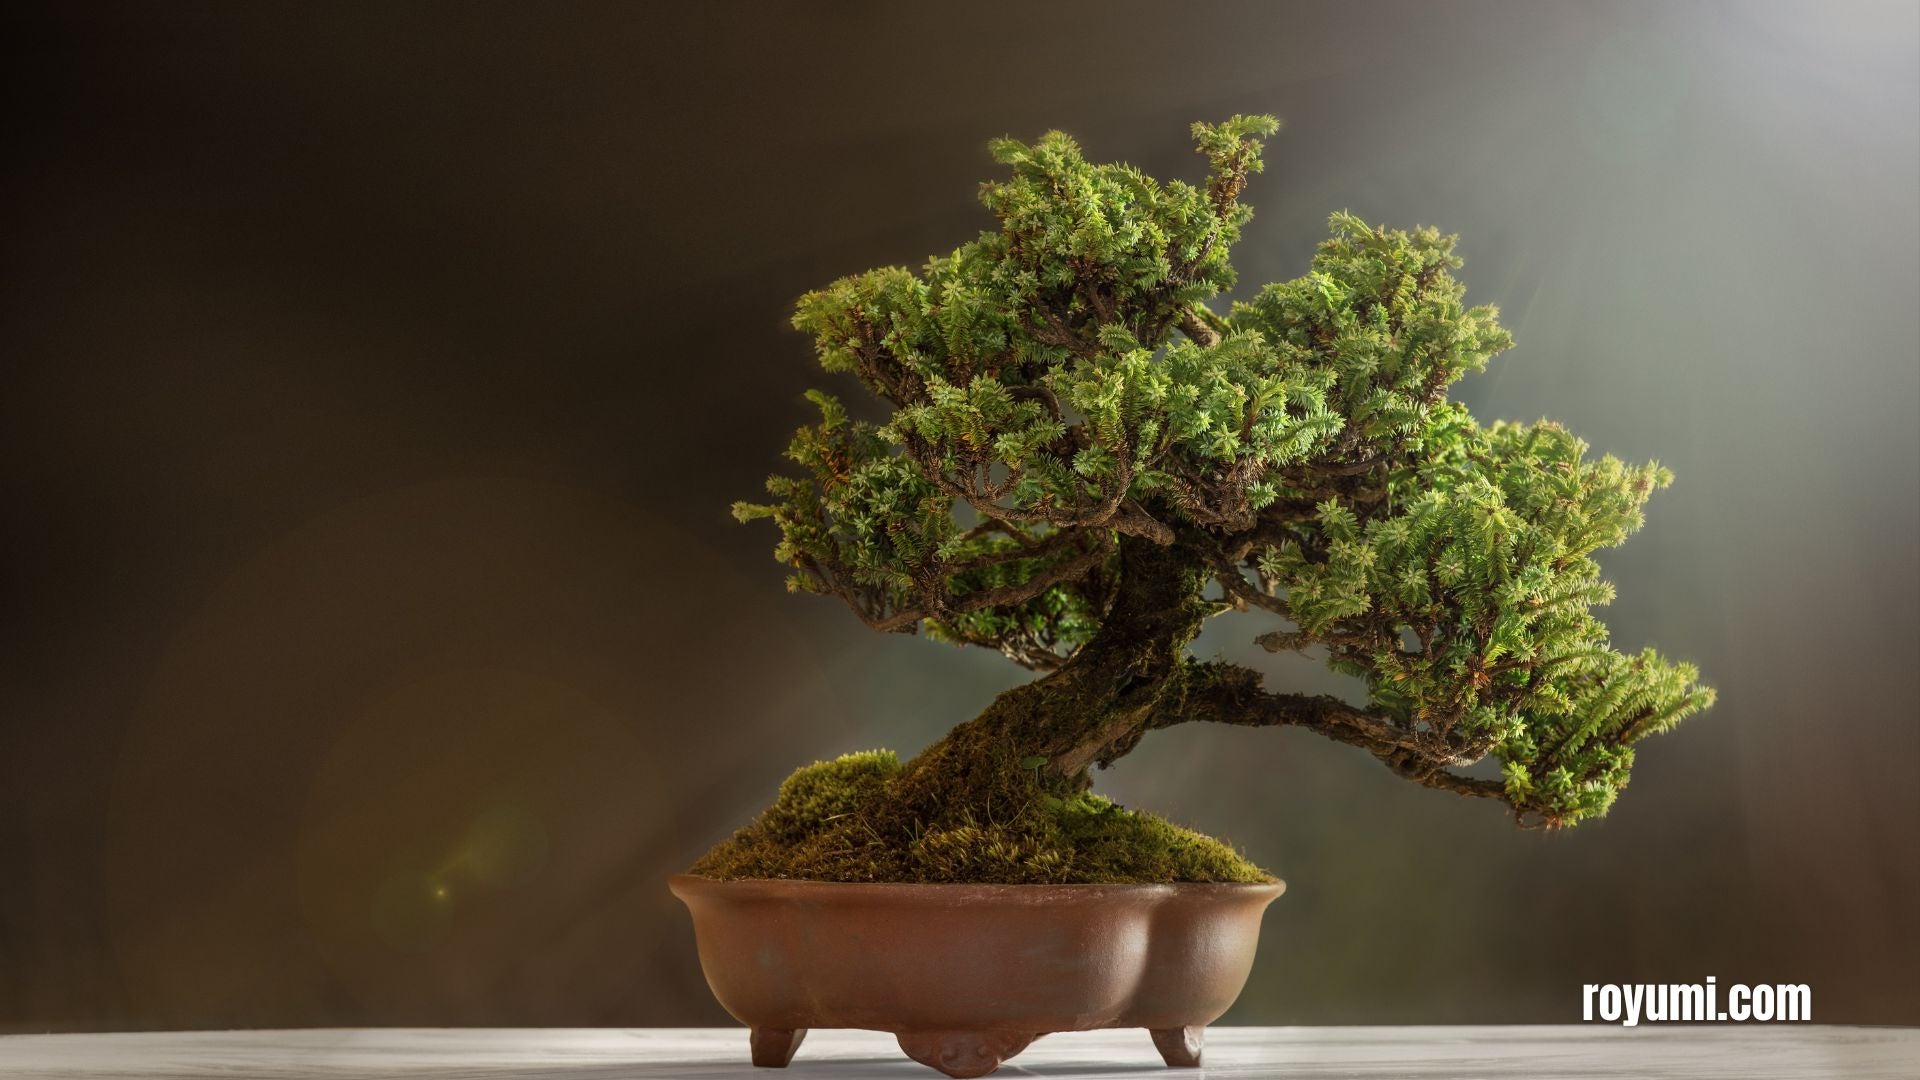 El arte del bonsái: Historia, técnicas y valor estético de una práctica milenaria